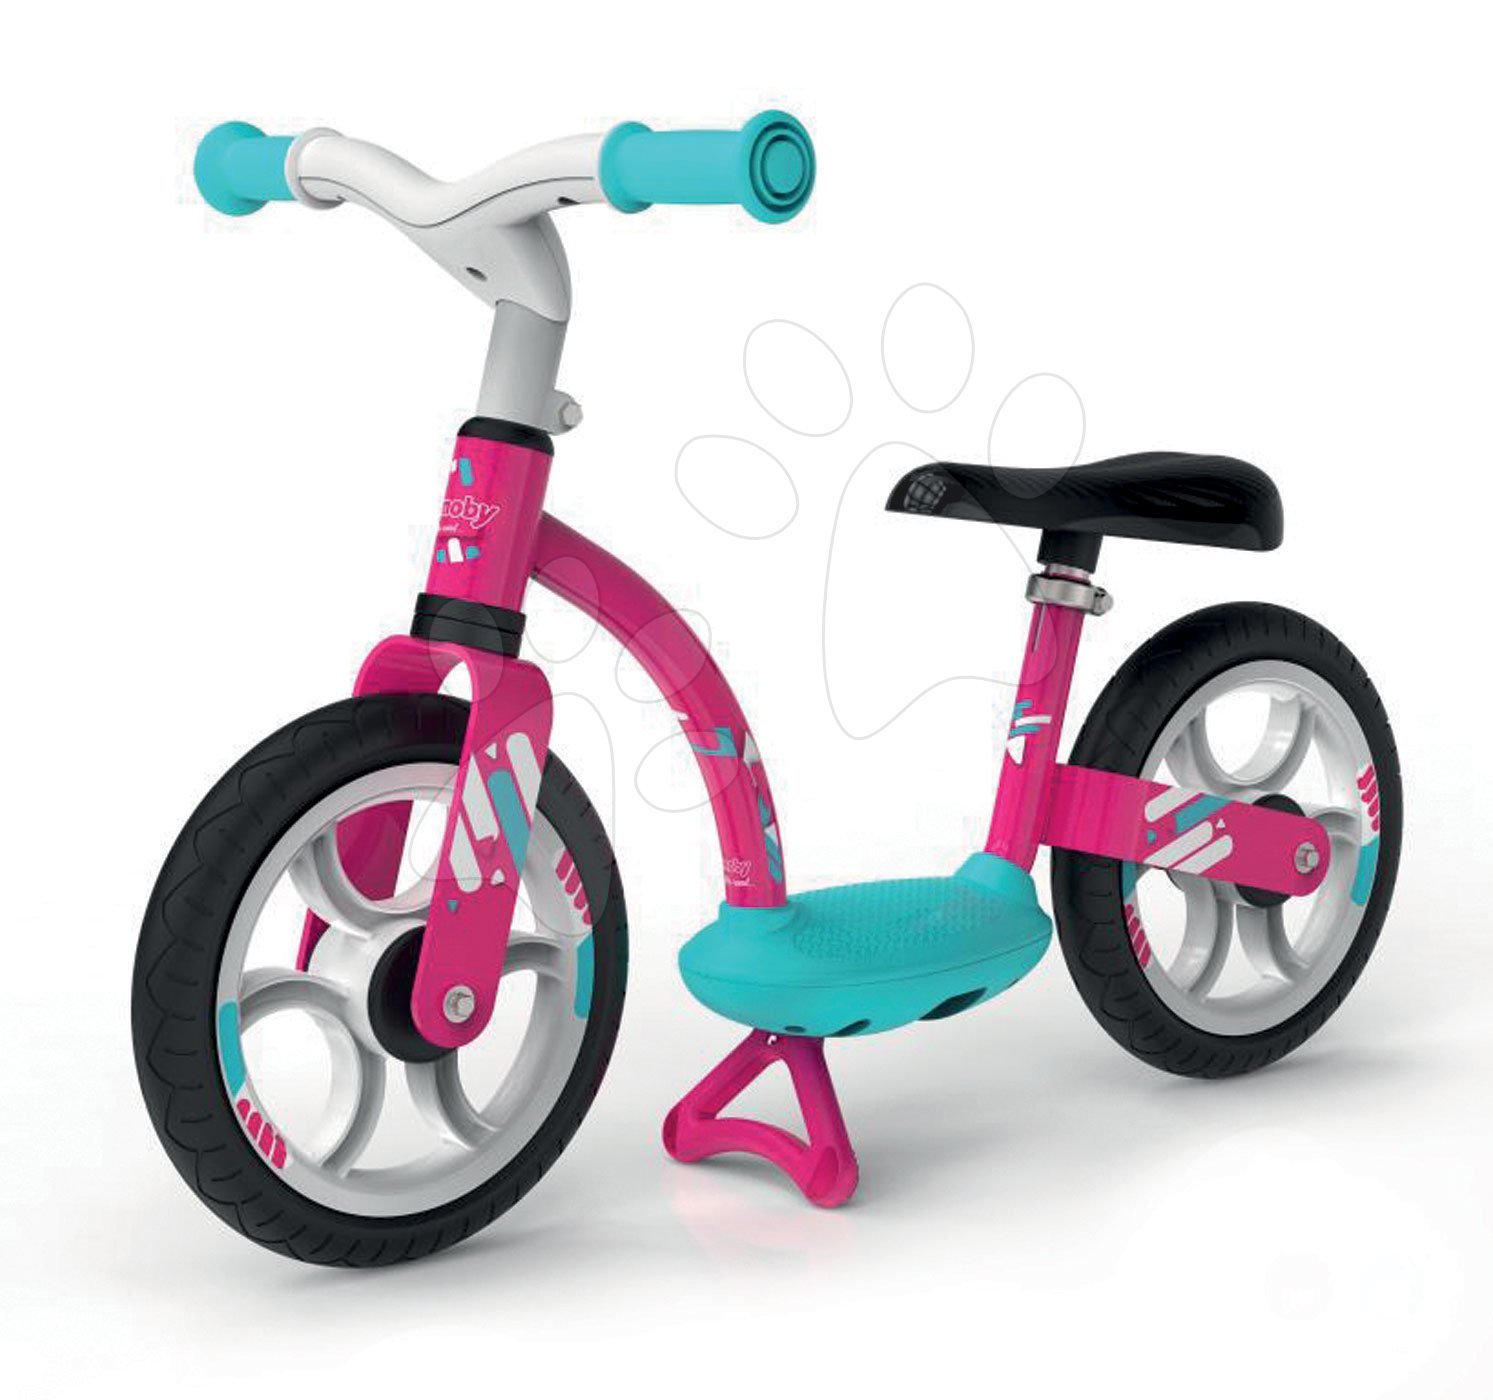 Odrážedla od 18 měsíců - Balanční odrážedlo Balance Bike Comfort Pink Smoby s kovovou konstrukcí a výškově nastavitelným sedadlem od 24 měsíců